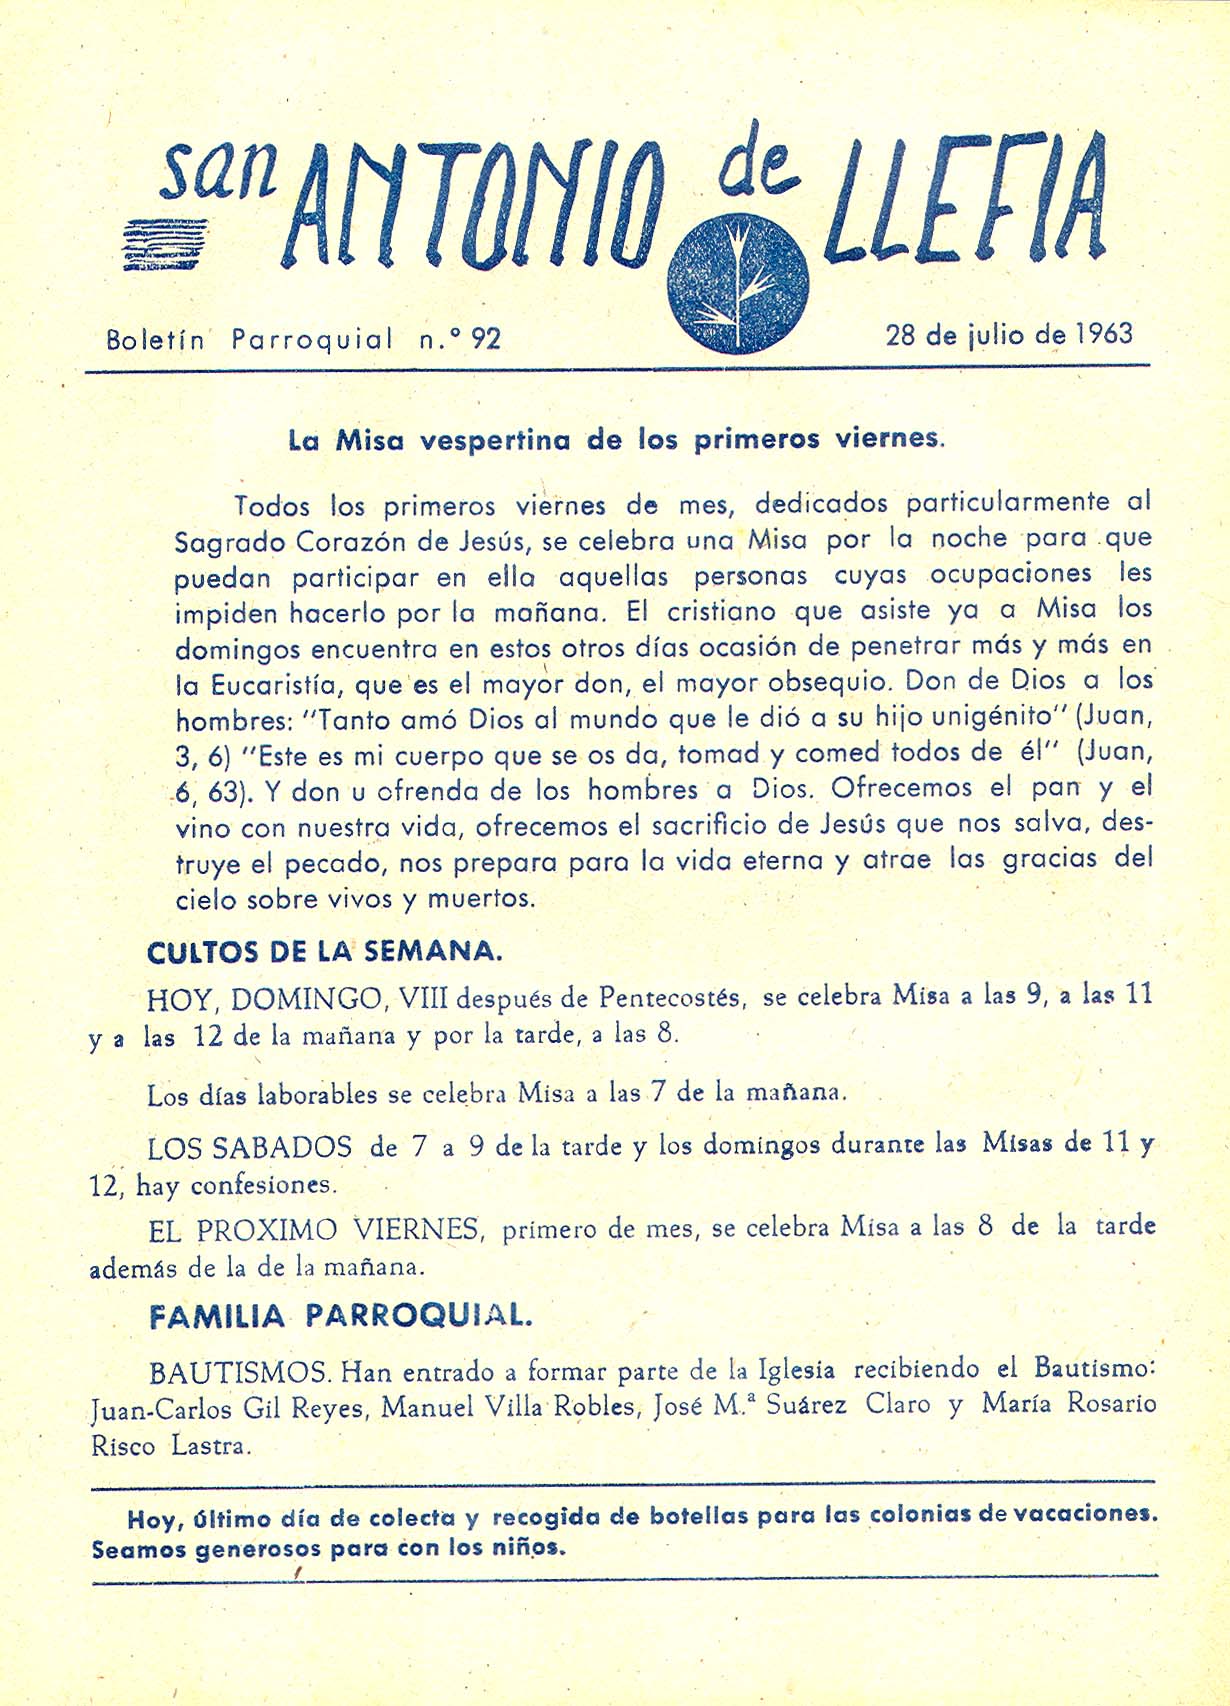 1963 Boletin parroquial nÃºm 92